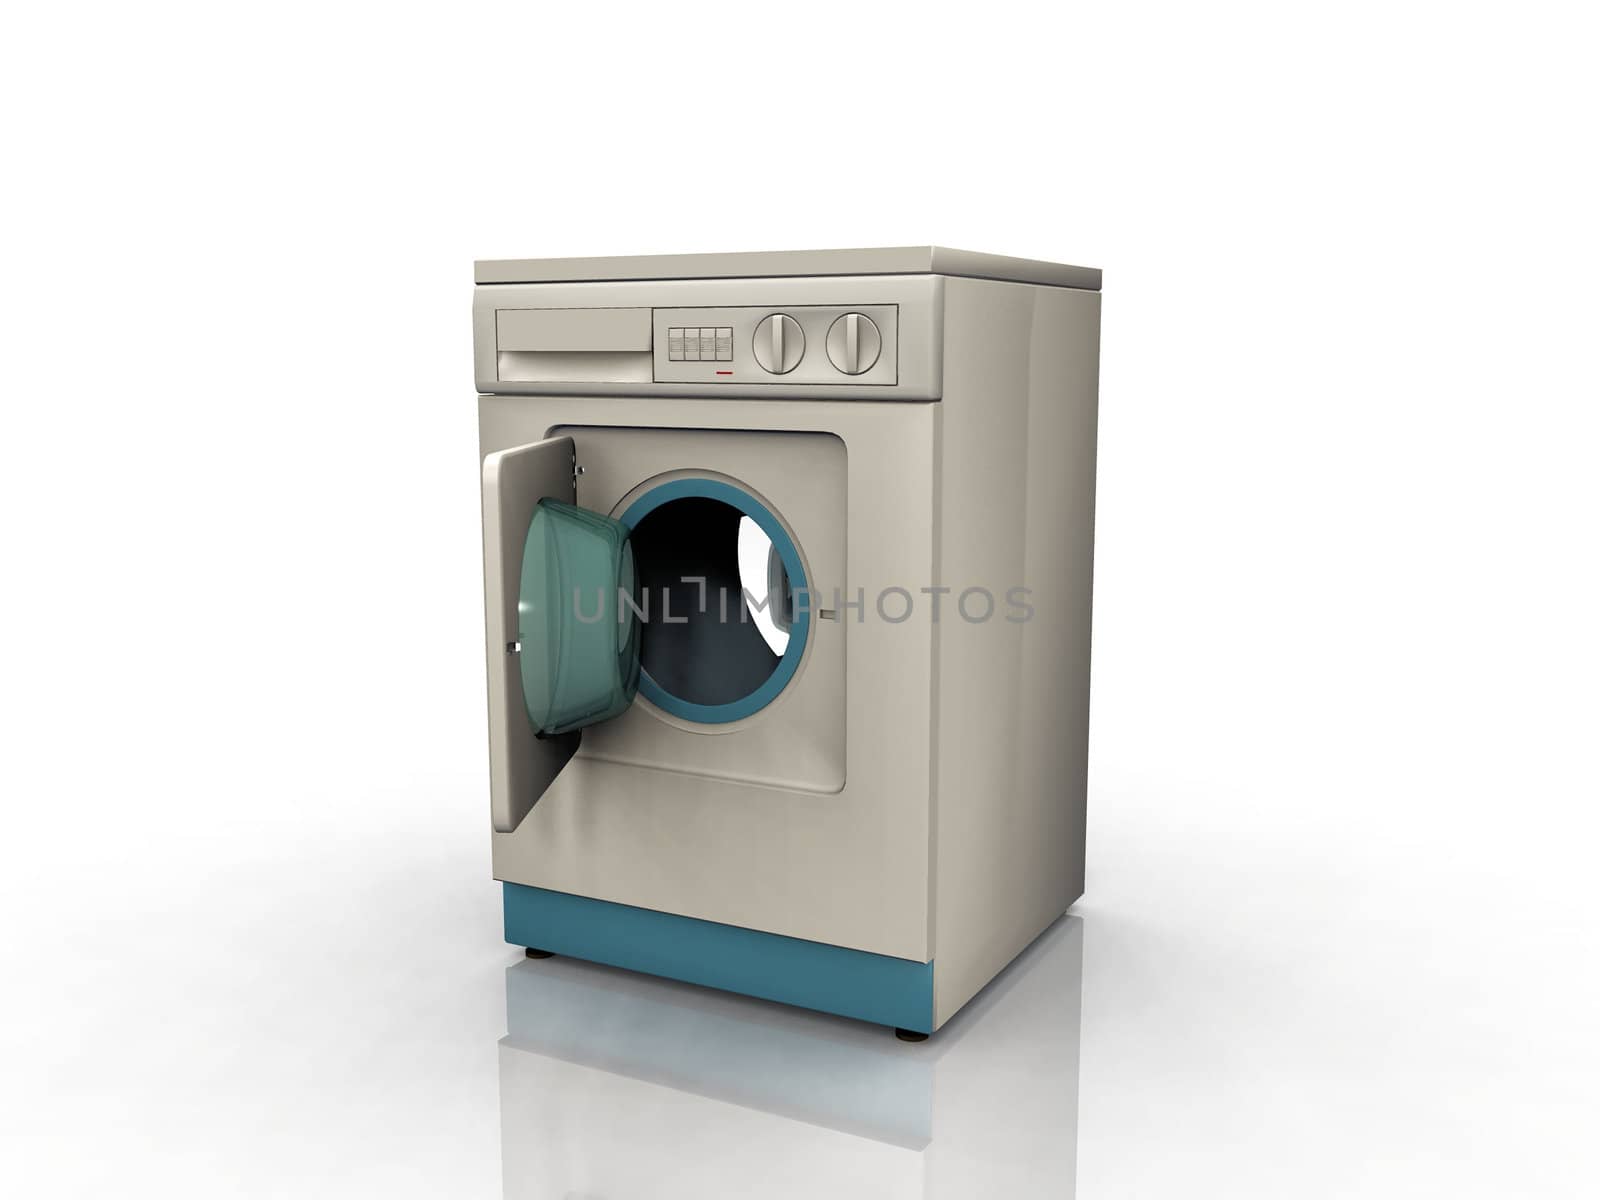 washing machine by njaj